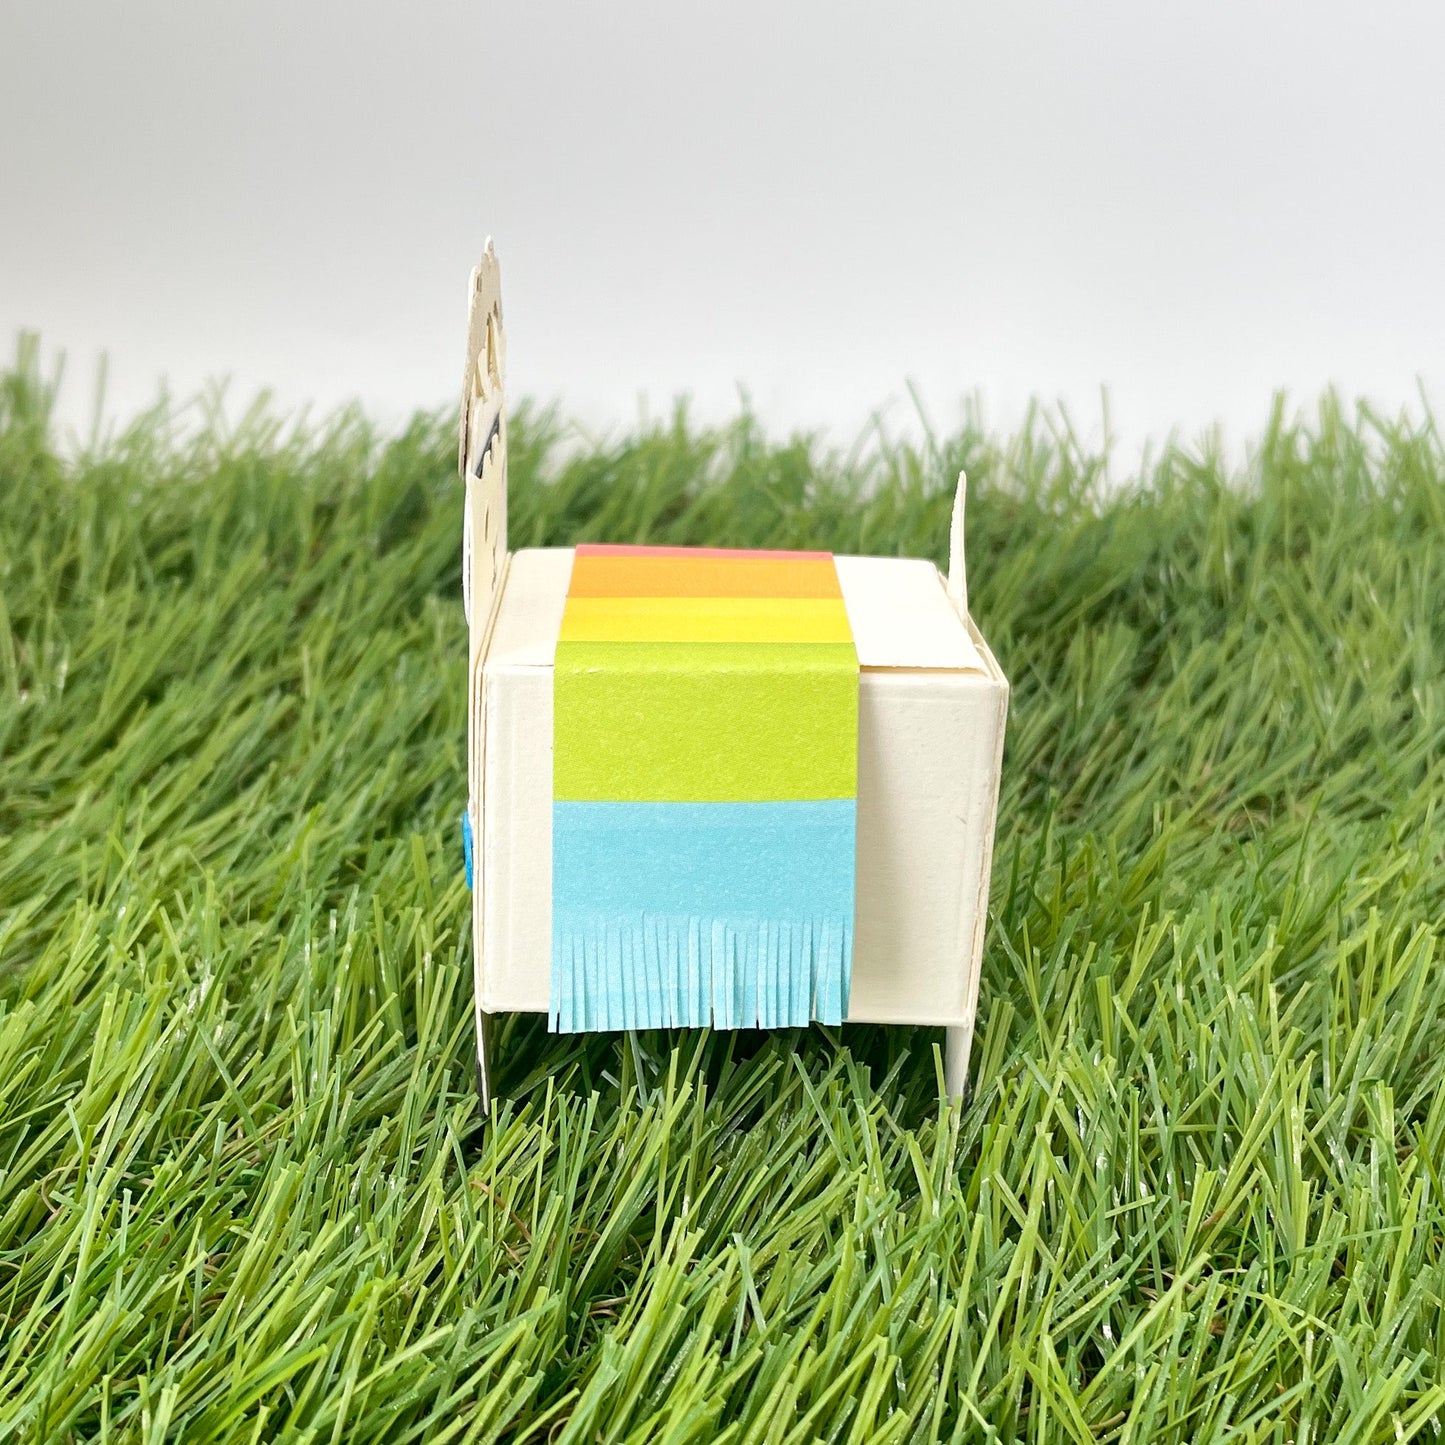 Cute Llama Miniature Gift Box